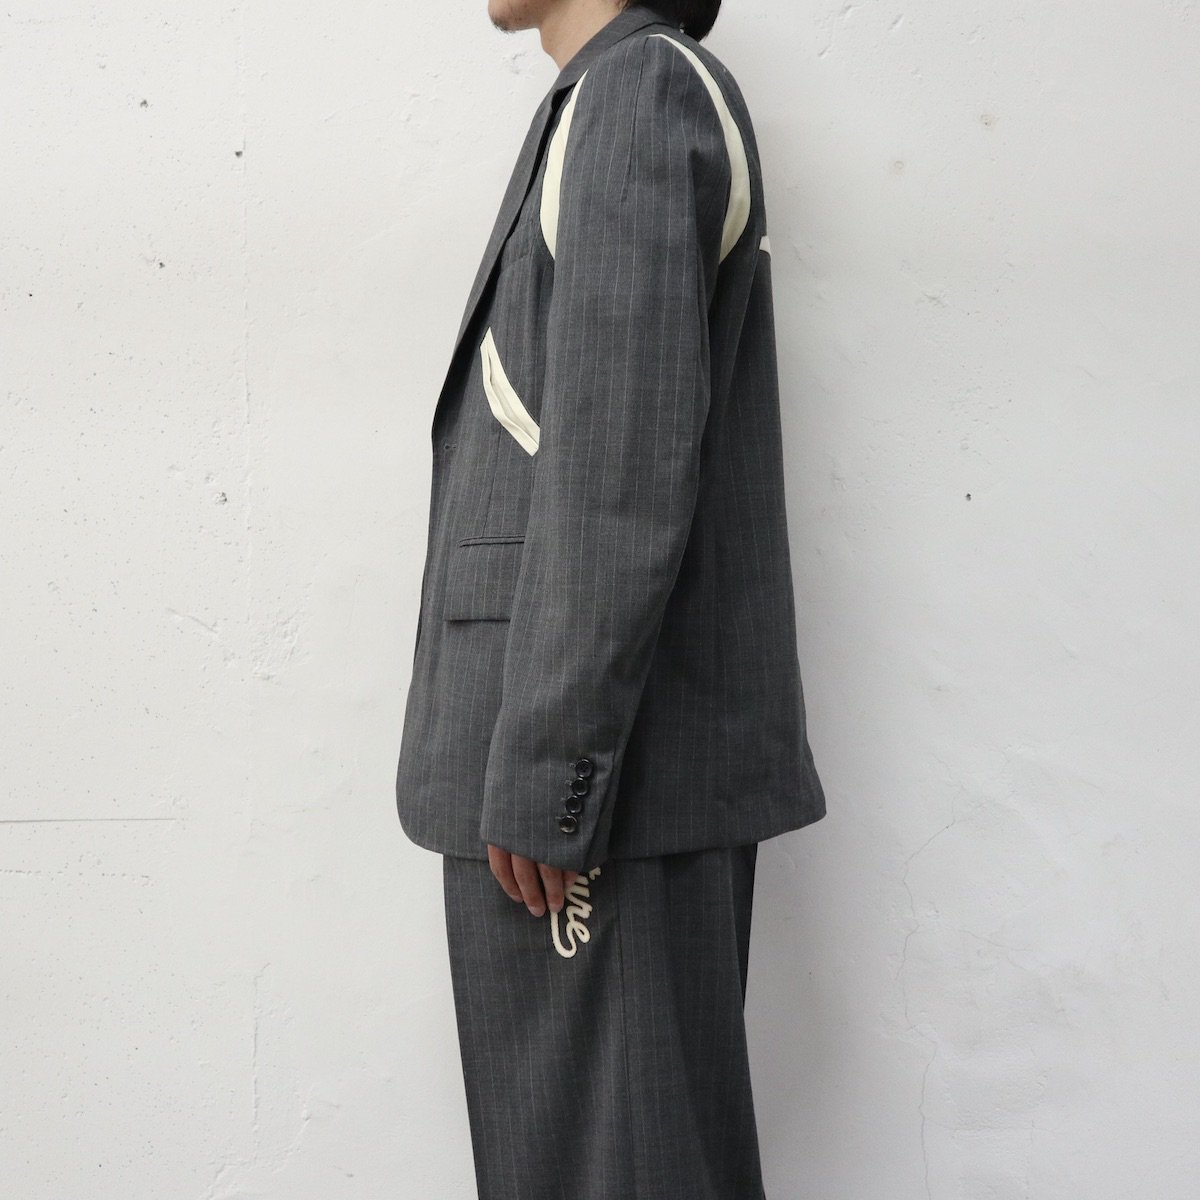 MASU future jacket gray size46-